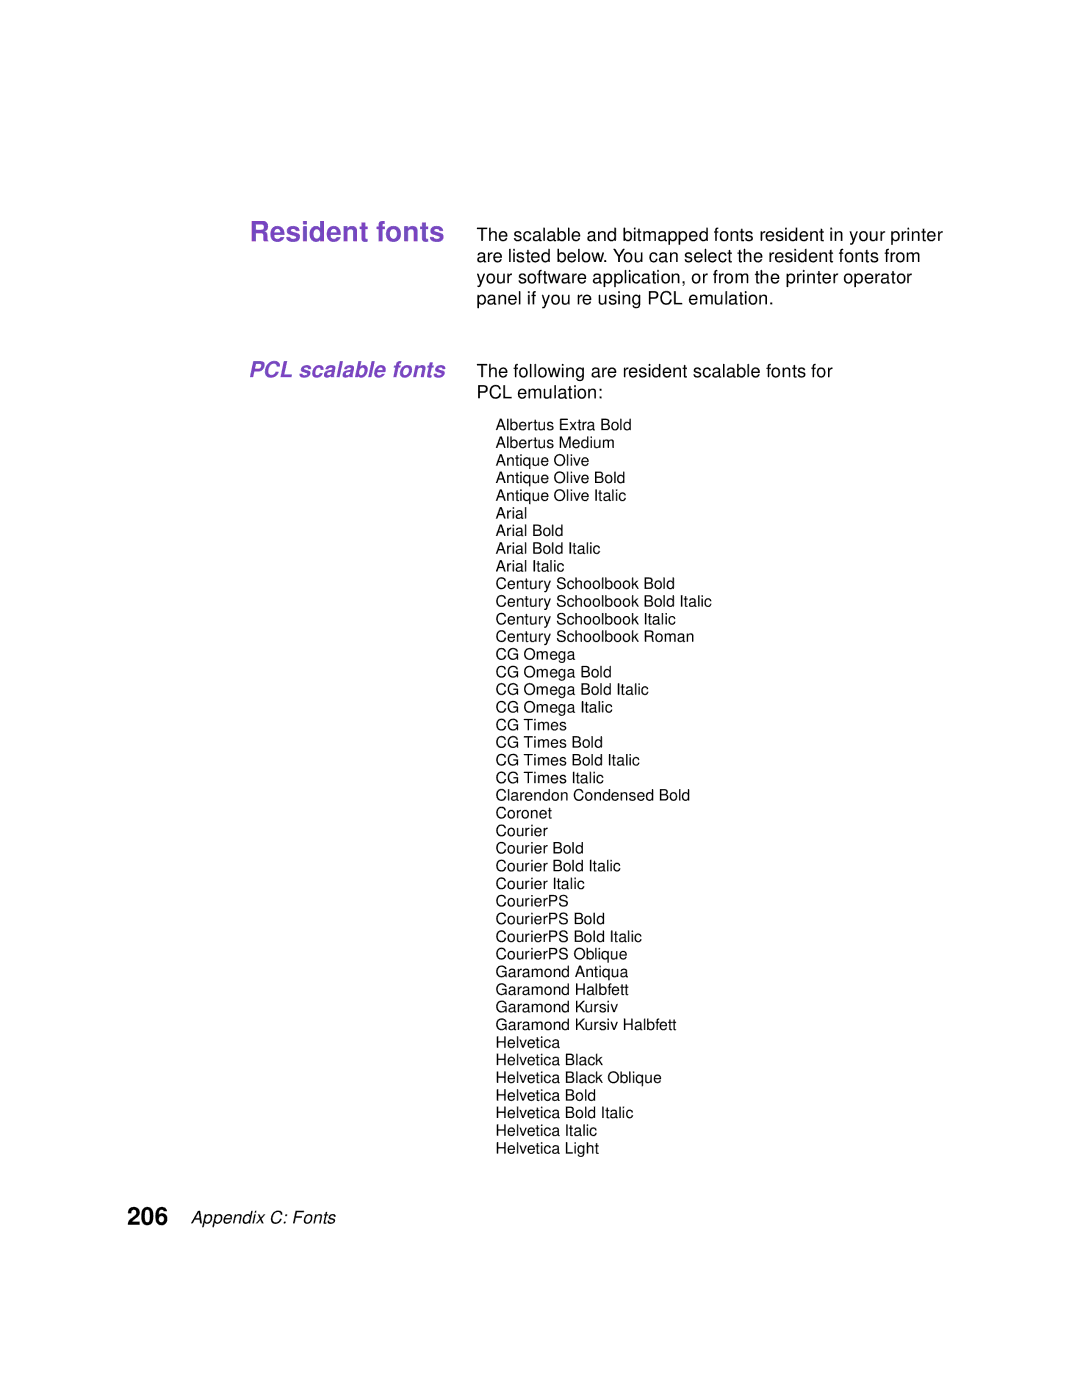 Lexmark Optra C710 manual Appendix C Fonts 